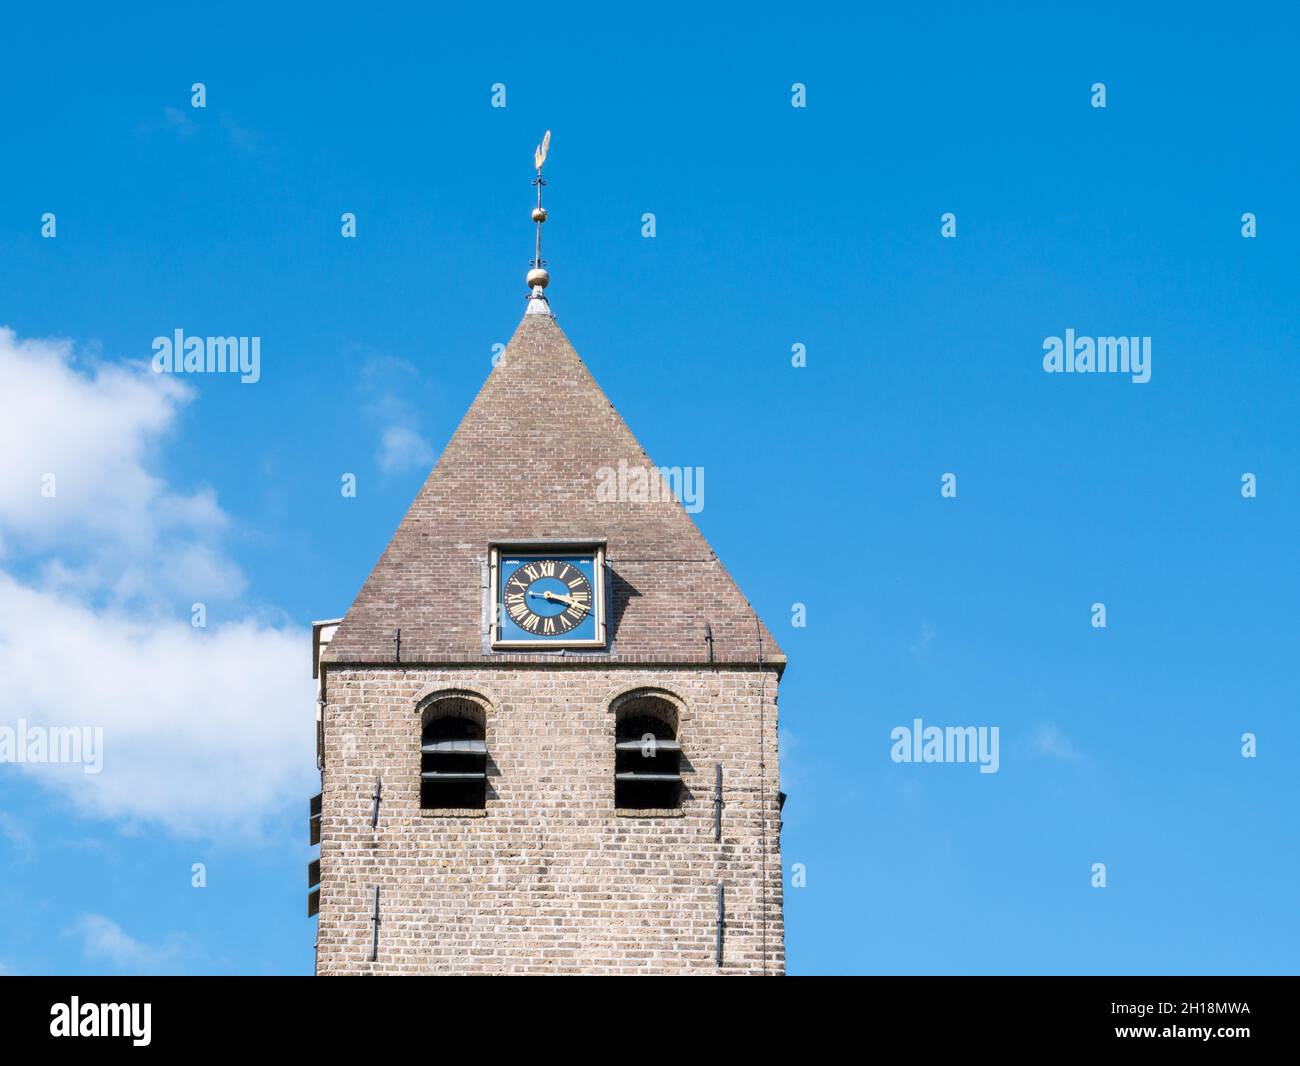 Iglesia torre de San Agathachch en el pueblo de Oudega, Alde Feanen, Frisia, Países Bajos Foto de stock